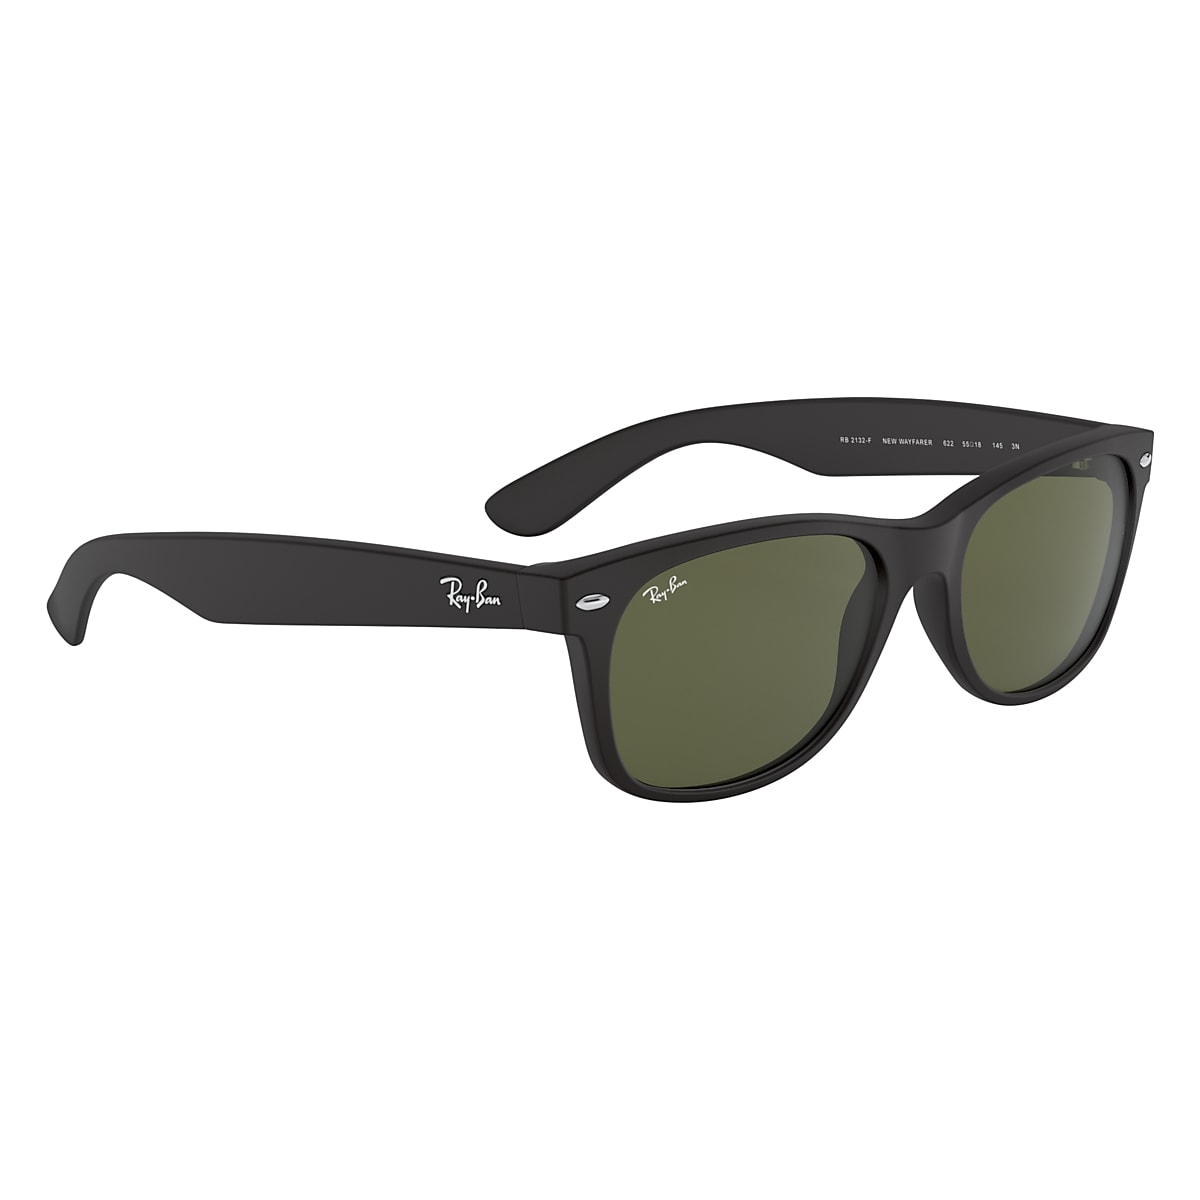 Ray-Ban Sunglasses New Wayfarer Matte Black Frame Green Lenses